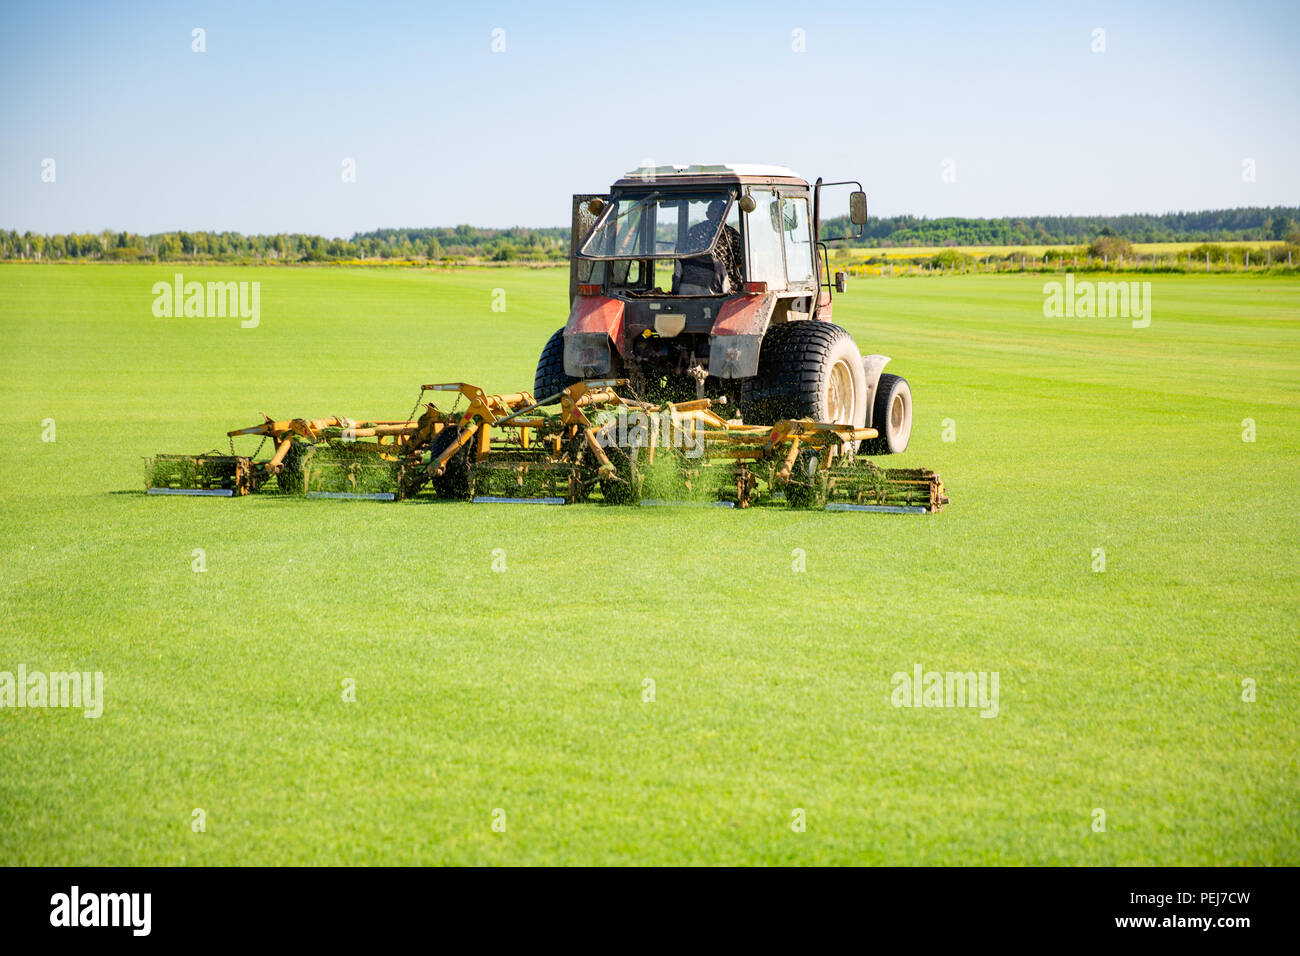 Traktor mit einer Düse zur Pflege ein Feld Rasen für ein Pferd Polo in Arbeit. Die cut-off-Gras zieht aus mechanischen Teile einer Düse. Grüne, flache fie Stockfoto